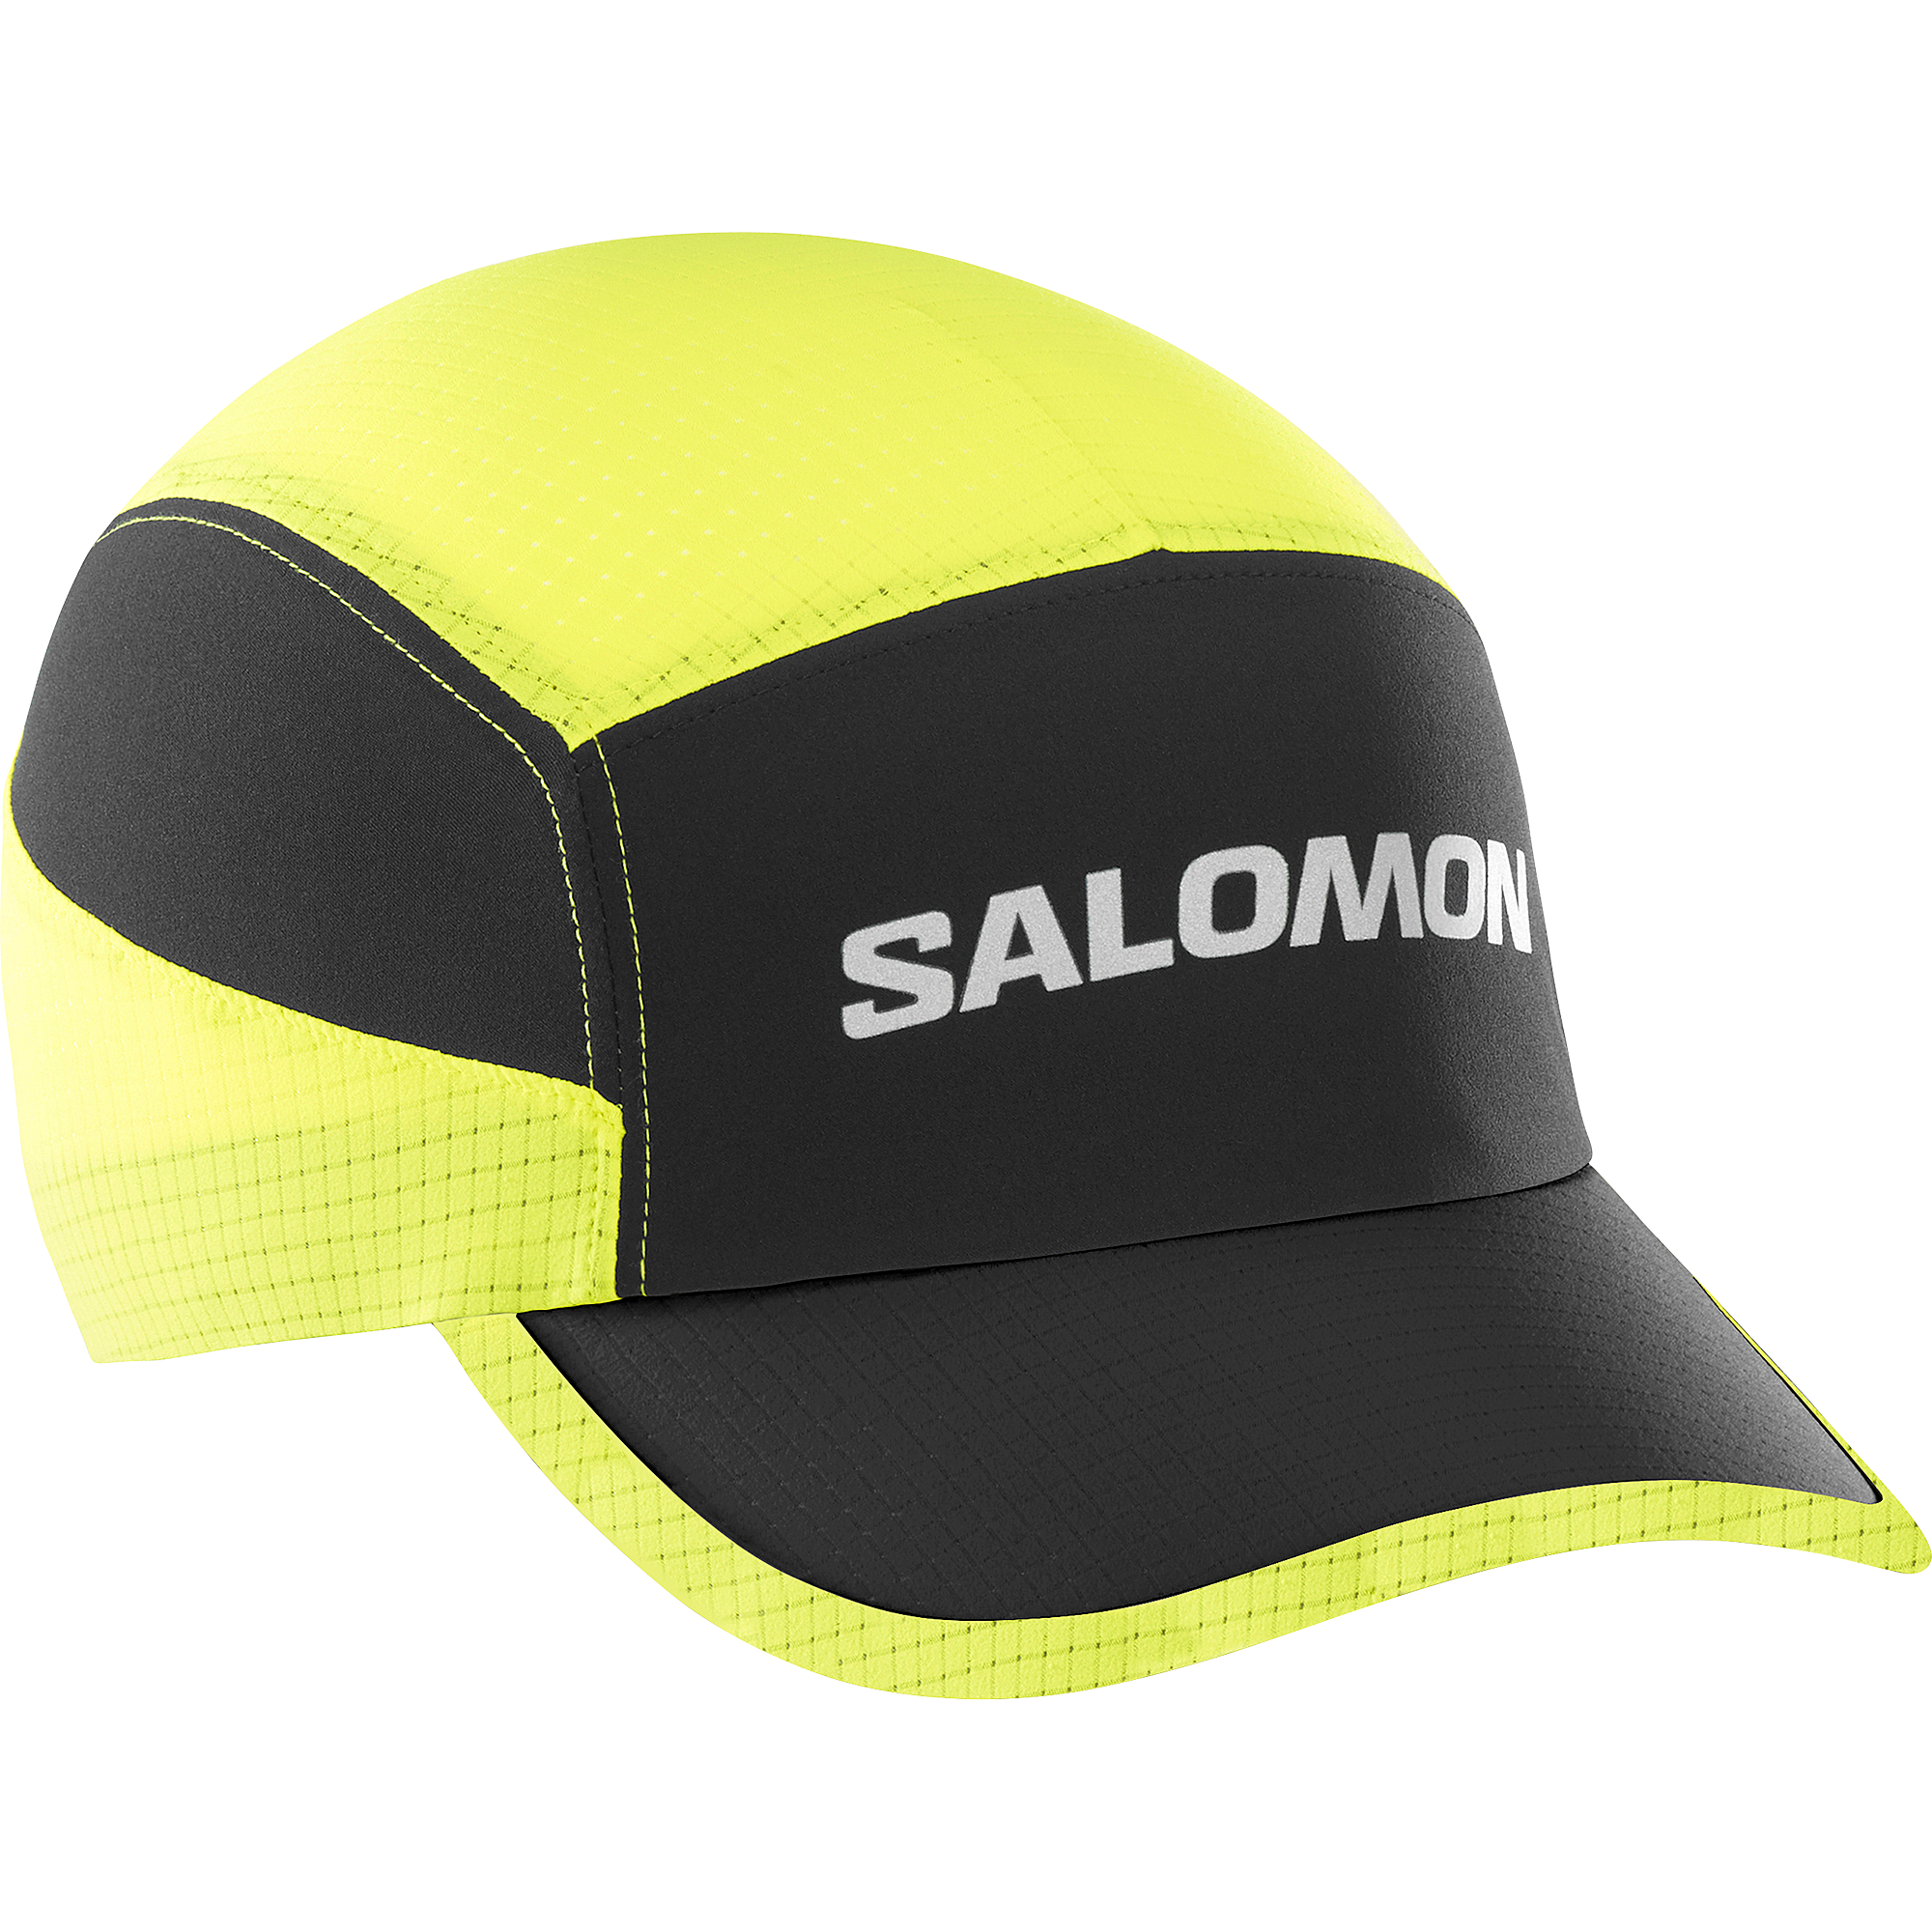 Salomon Salomon Sense Aero Cap Sulphur Spring OneSize, Sulphur Spring/